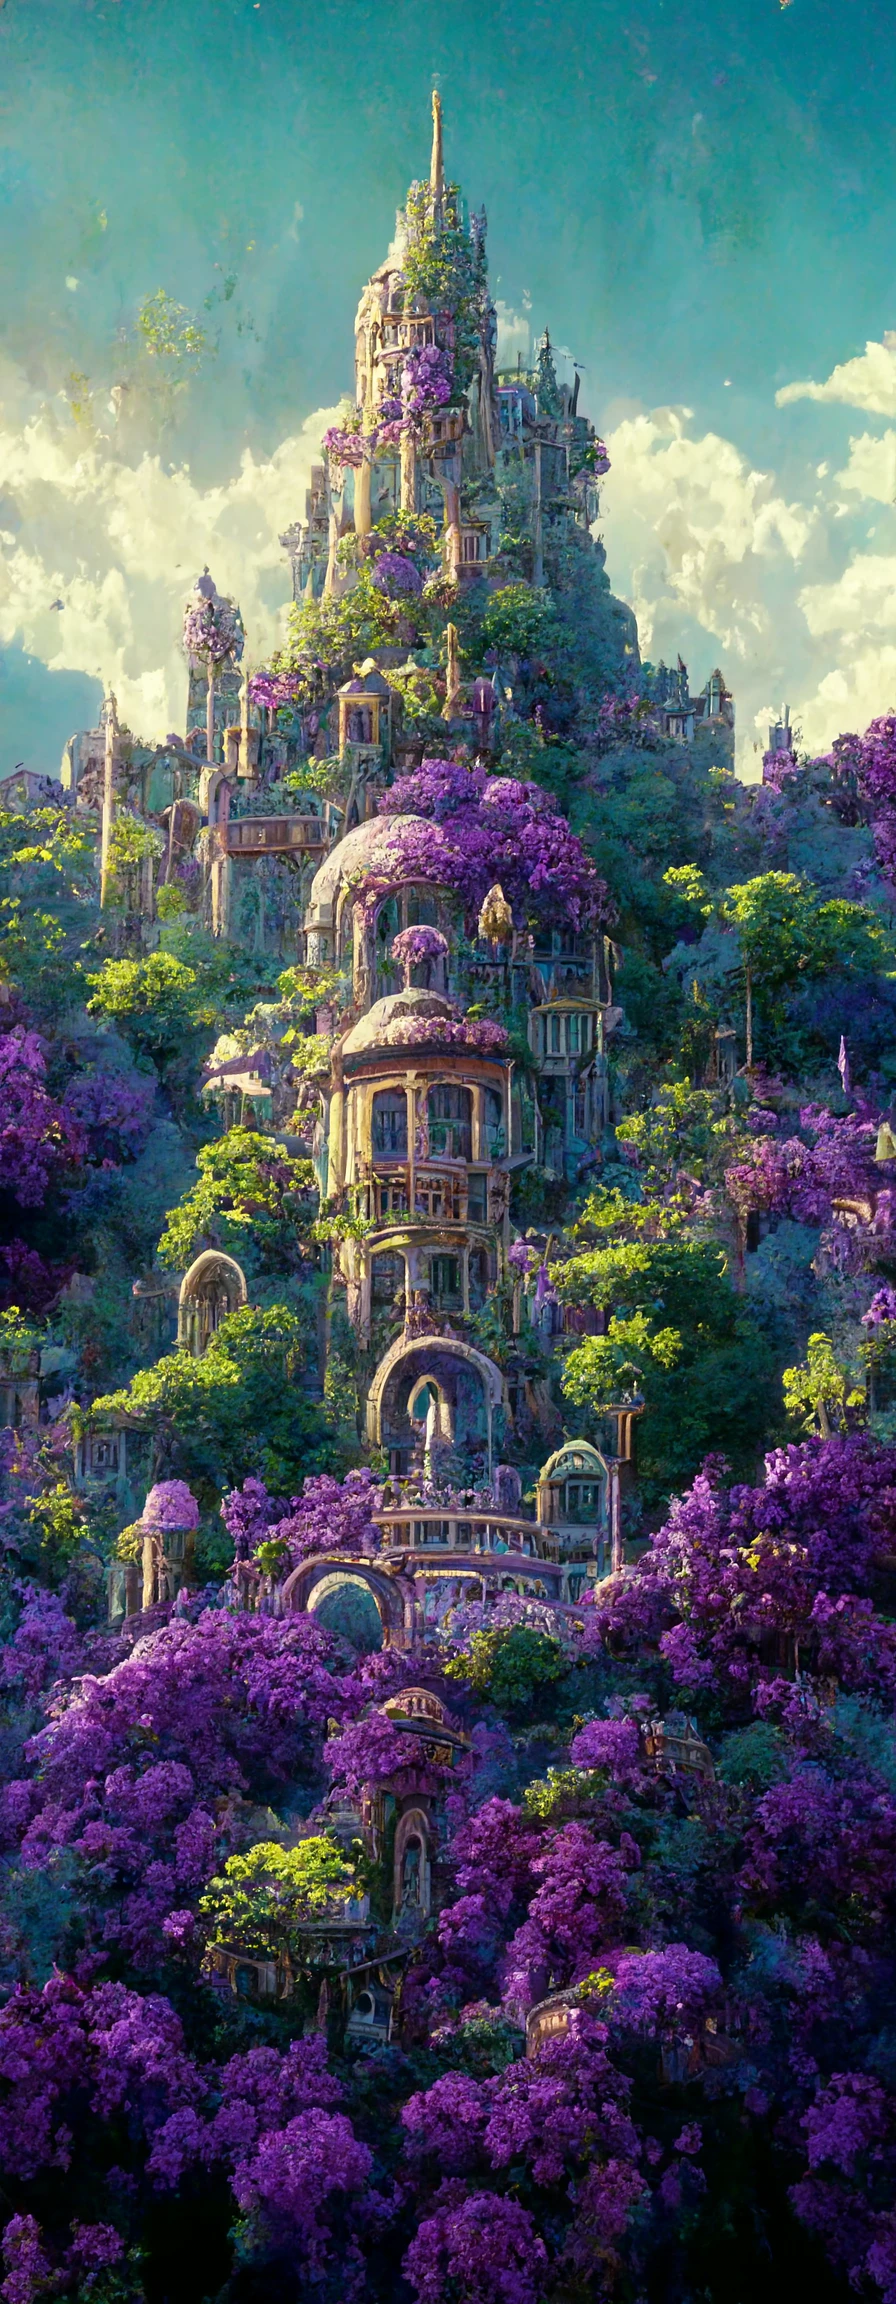 水晶森林中的紫罗兰城堡